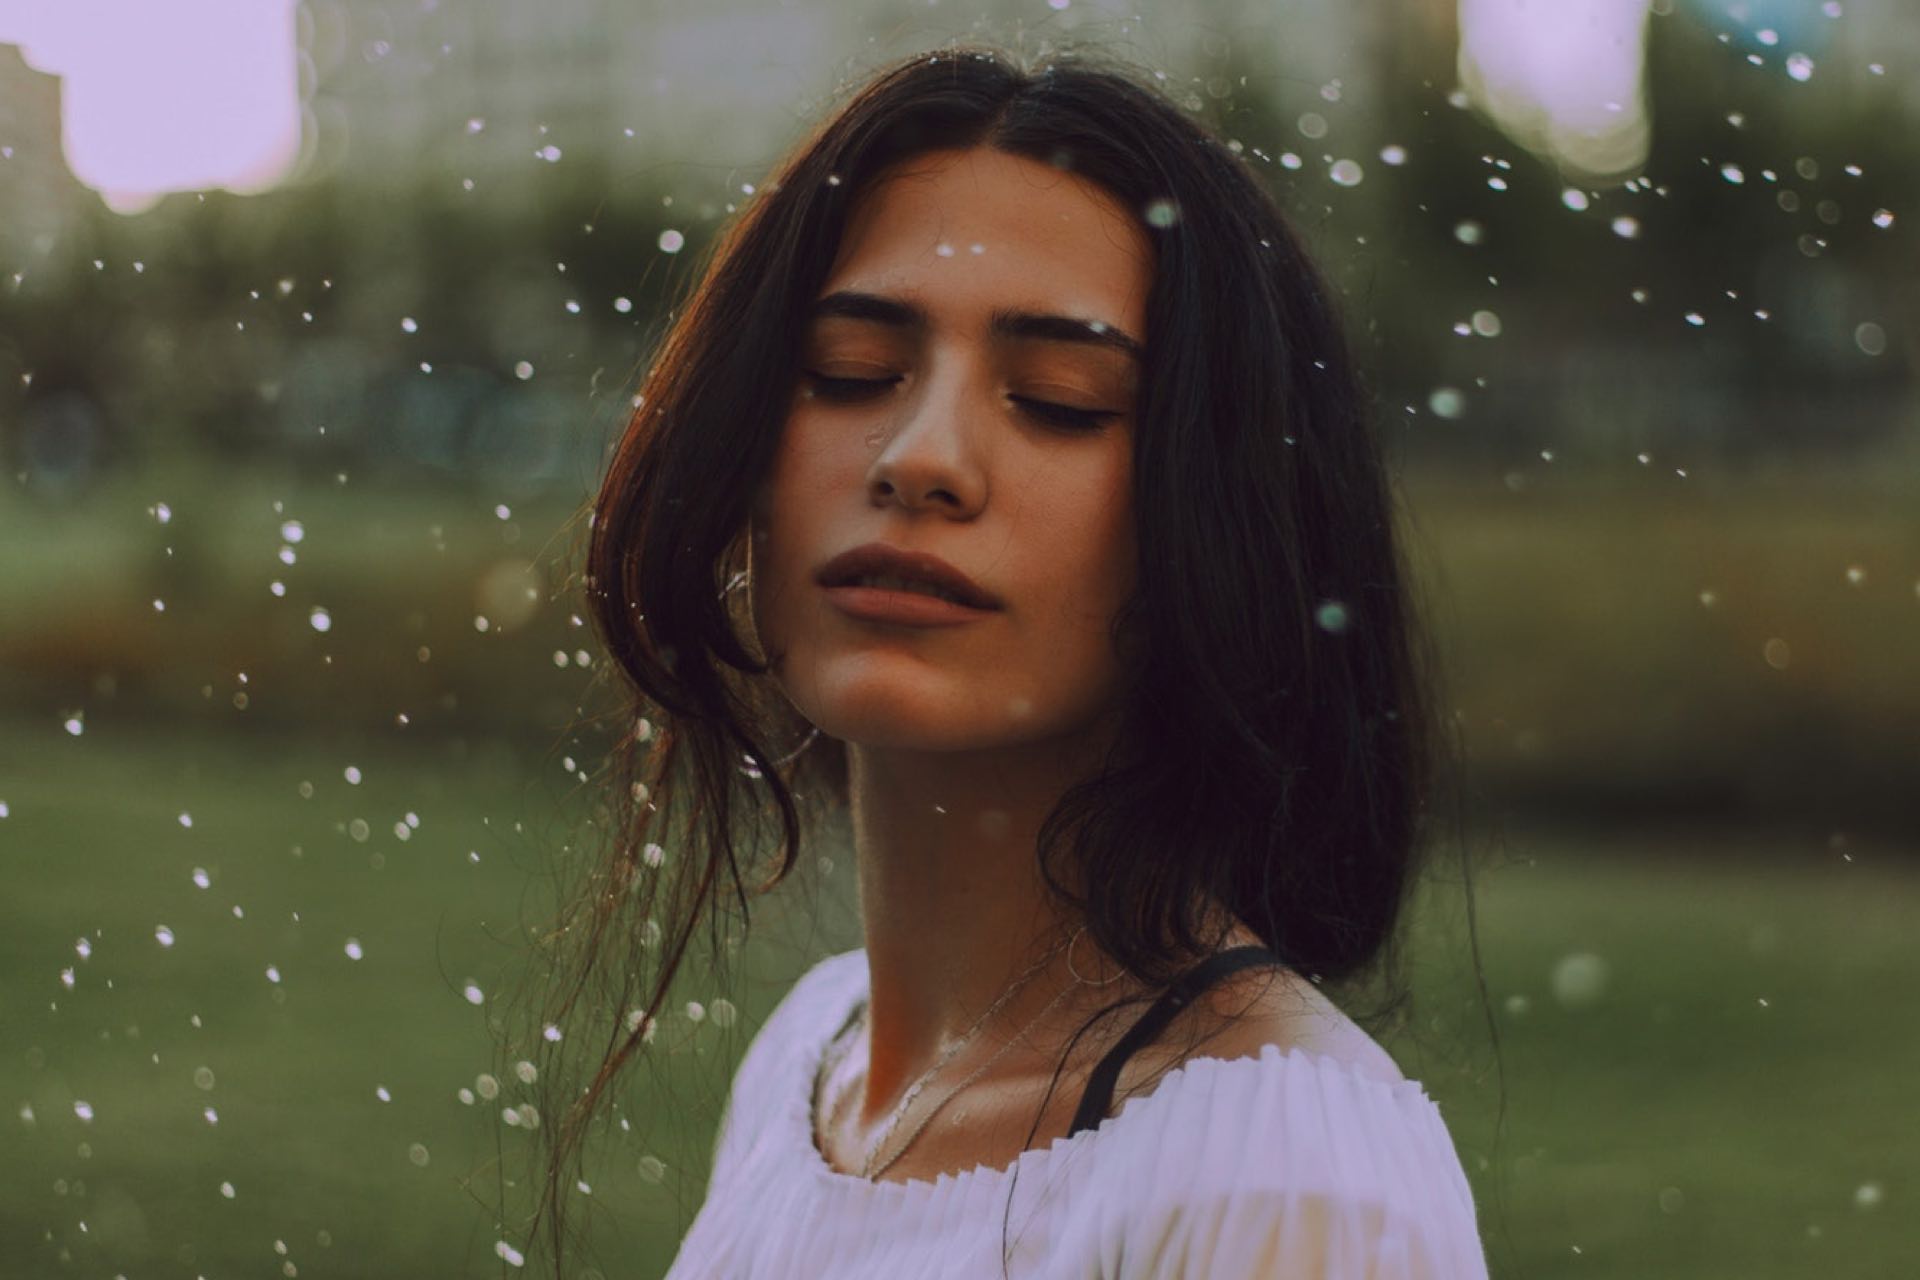 Eine junge Frau umgeben von Wassertropfen. Ihre Augen sind geschlossen, sie genießt und erfrischt ihre makellose Haut.